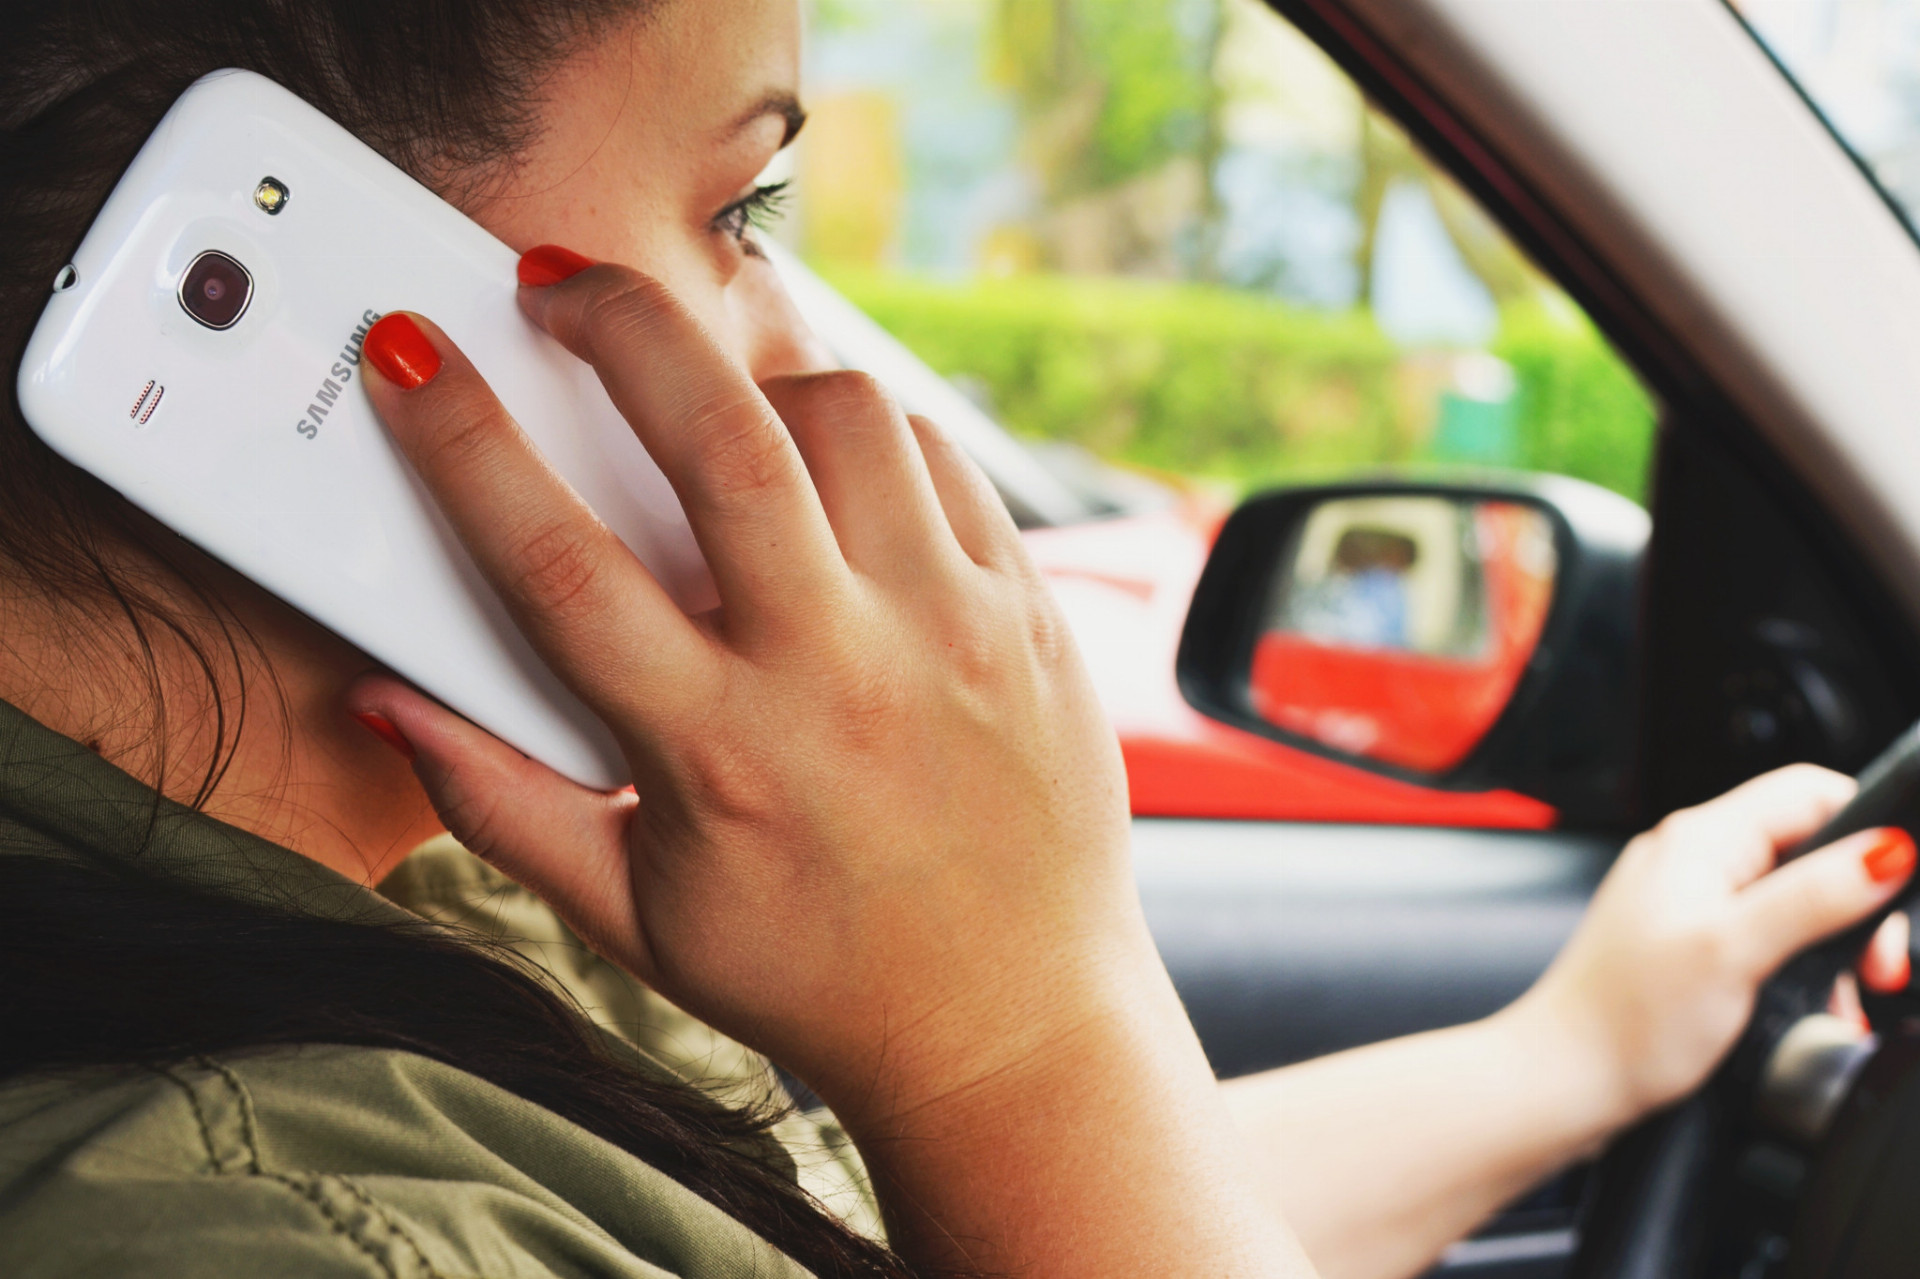 Mladí vodiči ešte poriadne nevedia ani zaradiť rýchlosť, a už majú v jednej ruke telefón, v druhej plechovku, medzi tým točia volantom, či fajčia. Netvrdíme, že sa to všetko nedá stíhať, hoci zákon vraví jasne. Vodič sa má venovať vedeniu vozidla a v prípade telefonovania je na mieste aj mastná pokuta. Každopádne, najprv je potrebné naučiť sa poriadne a plnohodnotne šoférovať.